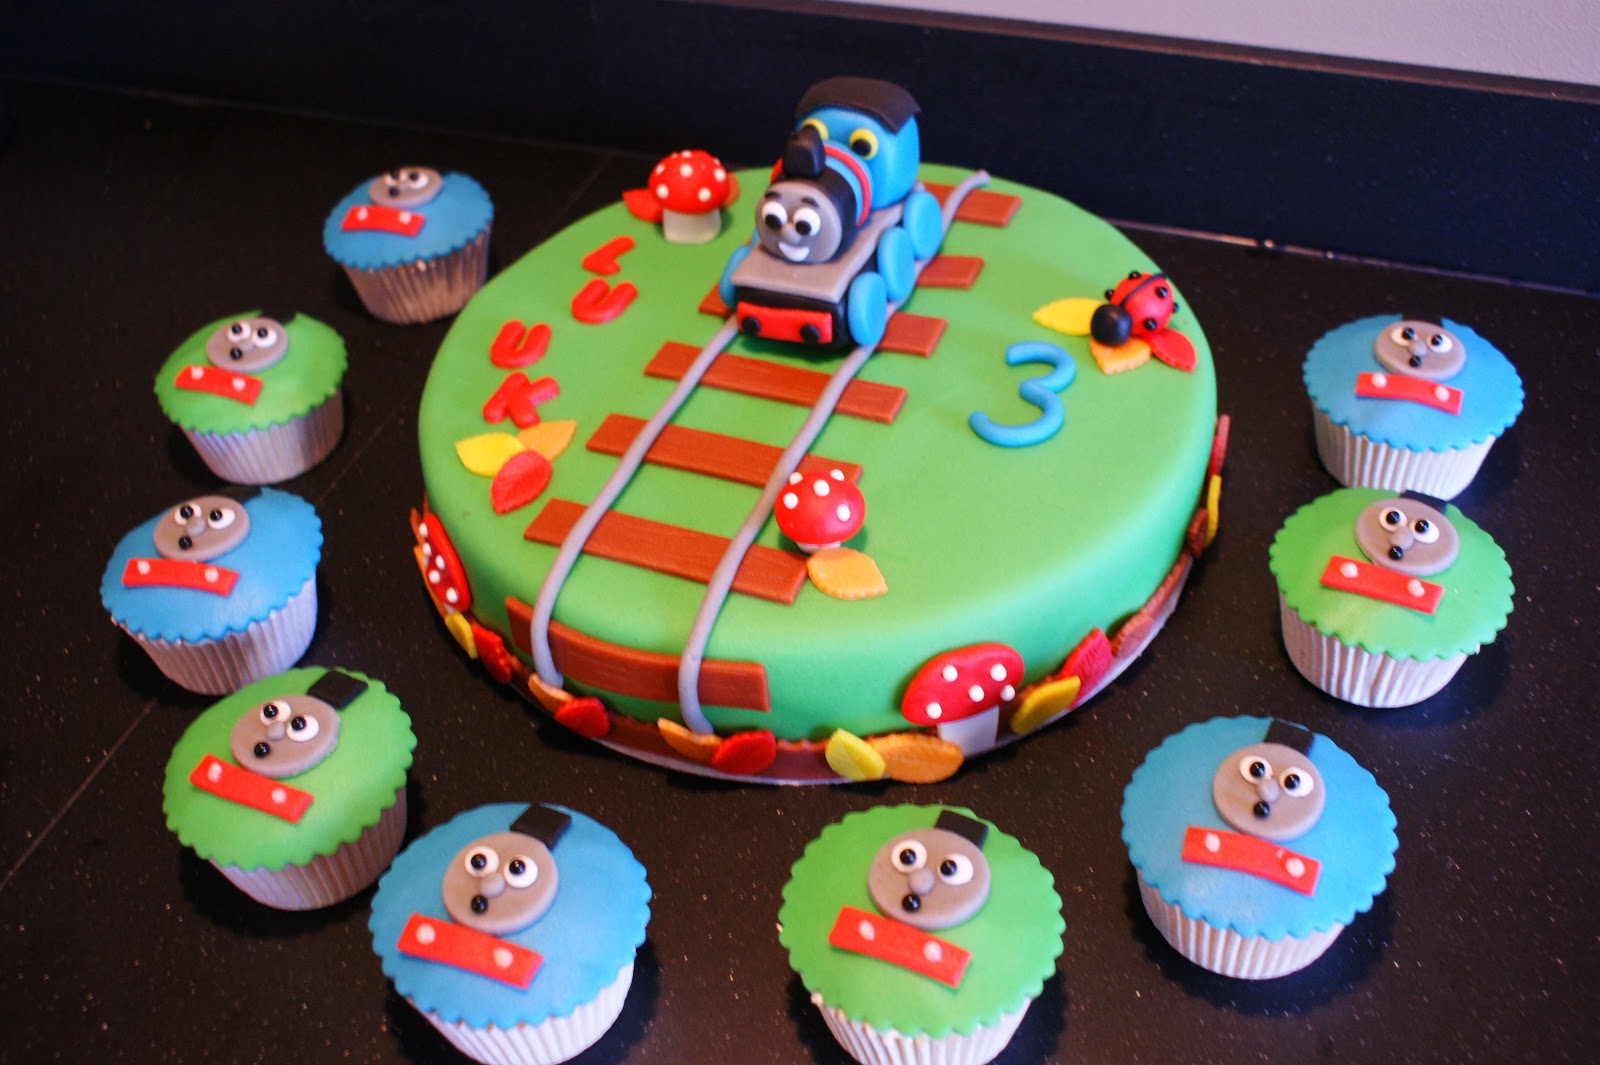 Regulatie Cerebrum Verdwijnen cup of cake: Thomas de trein taart & cupcakes